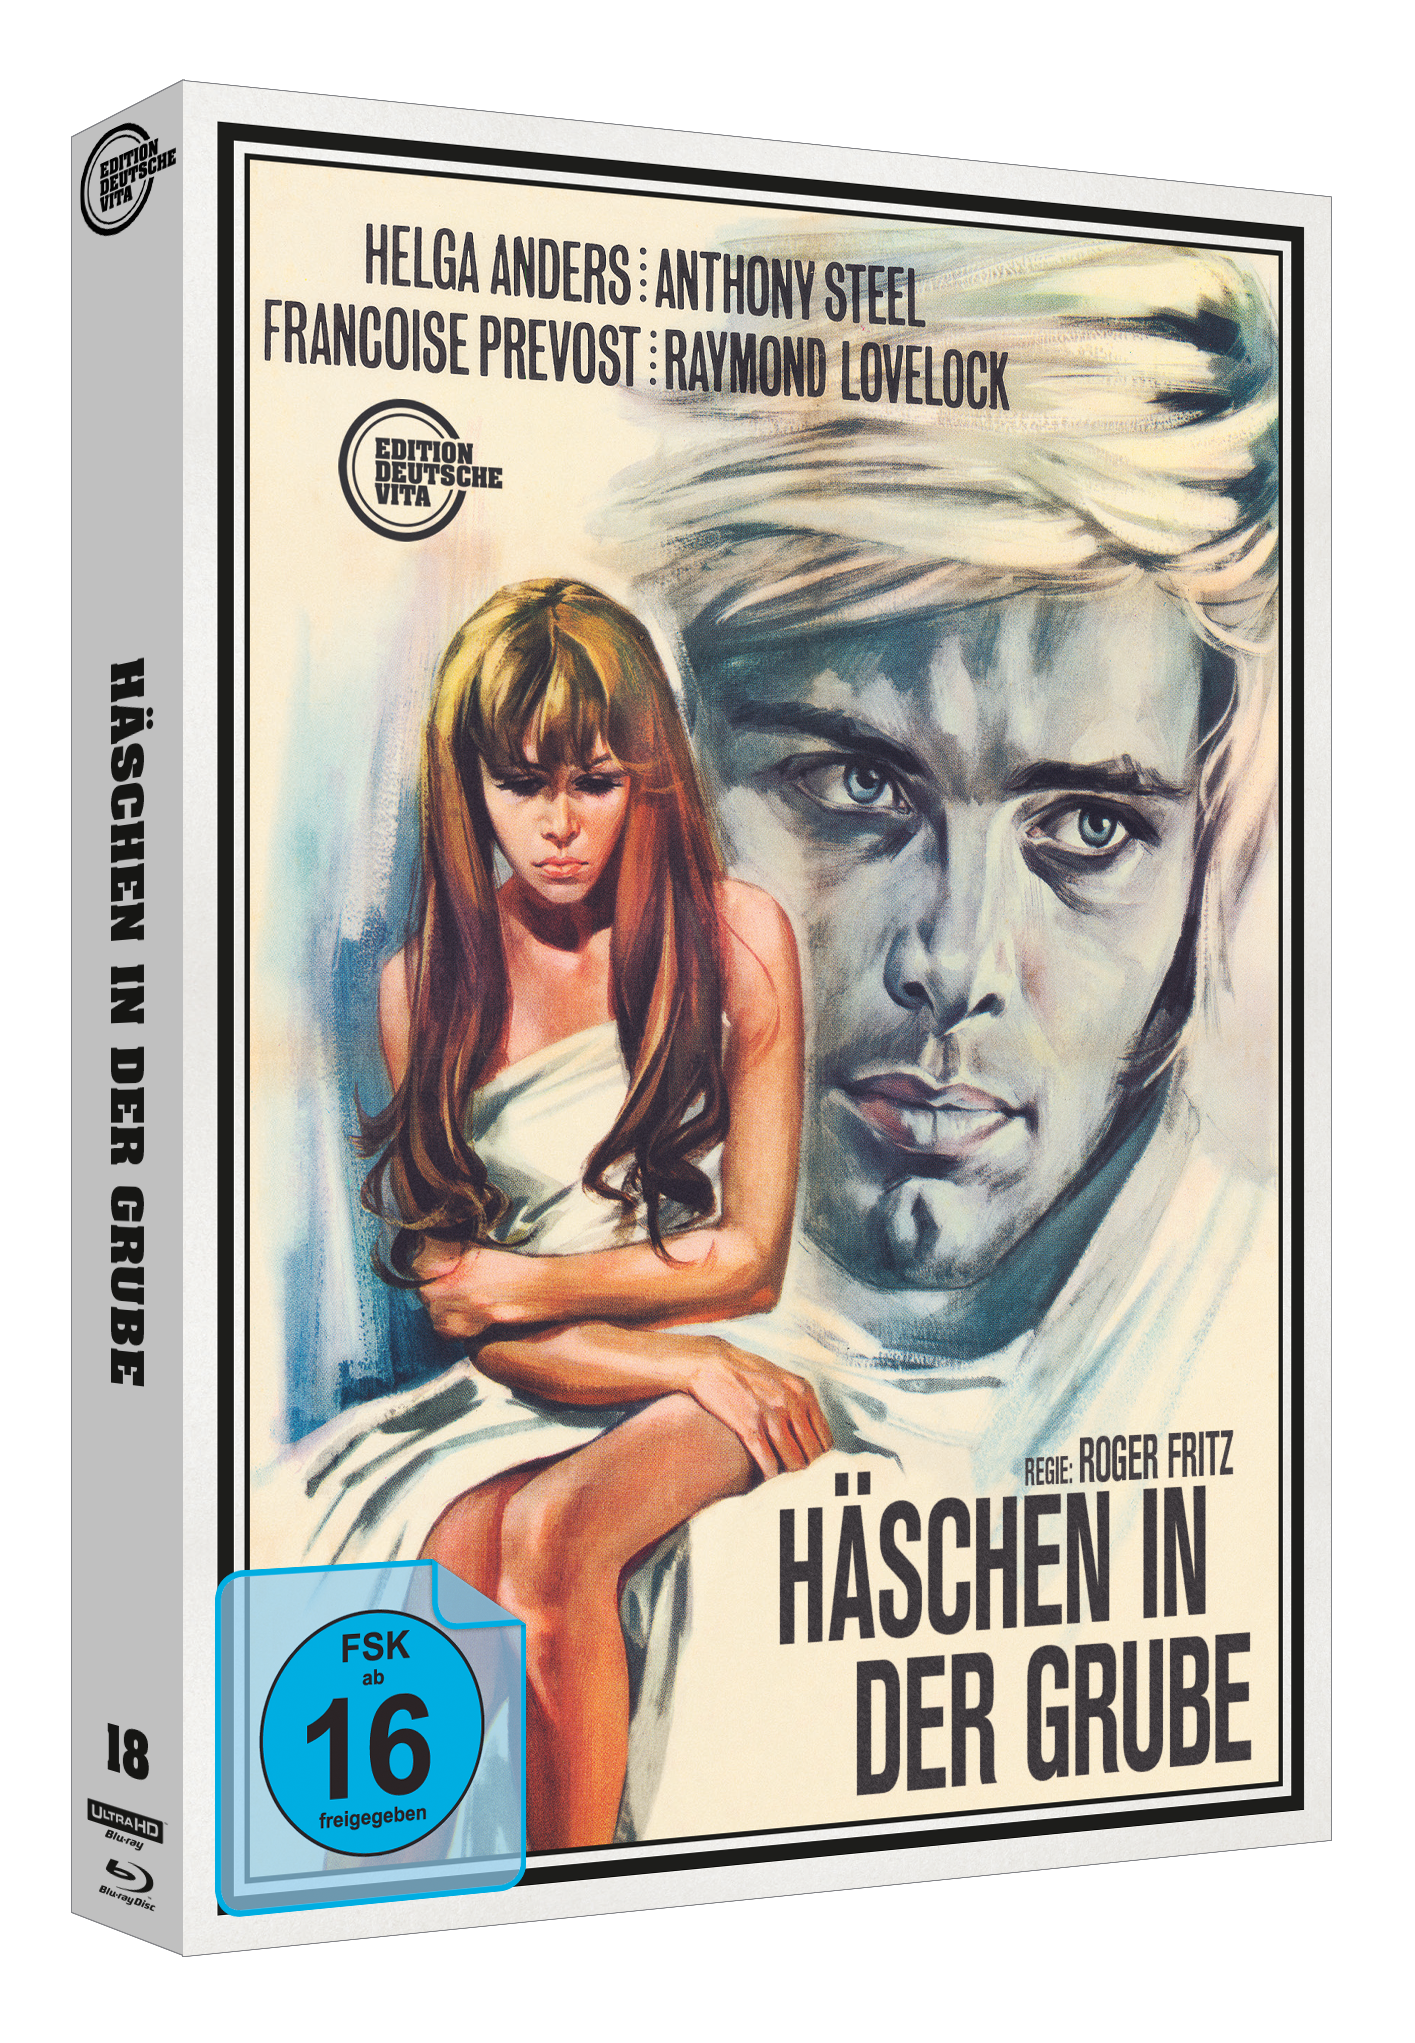 HÄSCHEN IN DER GRUBE ("EDITION DEUTSCHE VITA #18")(2 Discs Set UHD & Blu-ray) Cover B